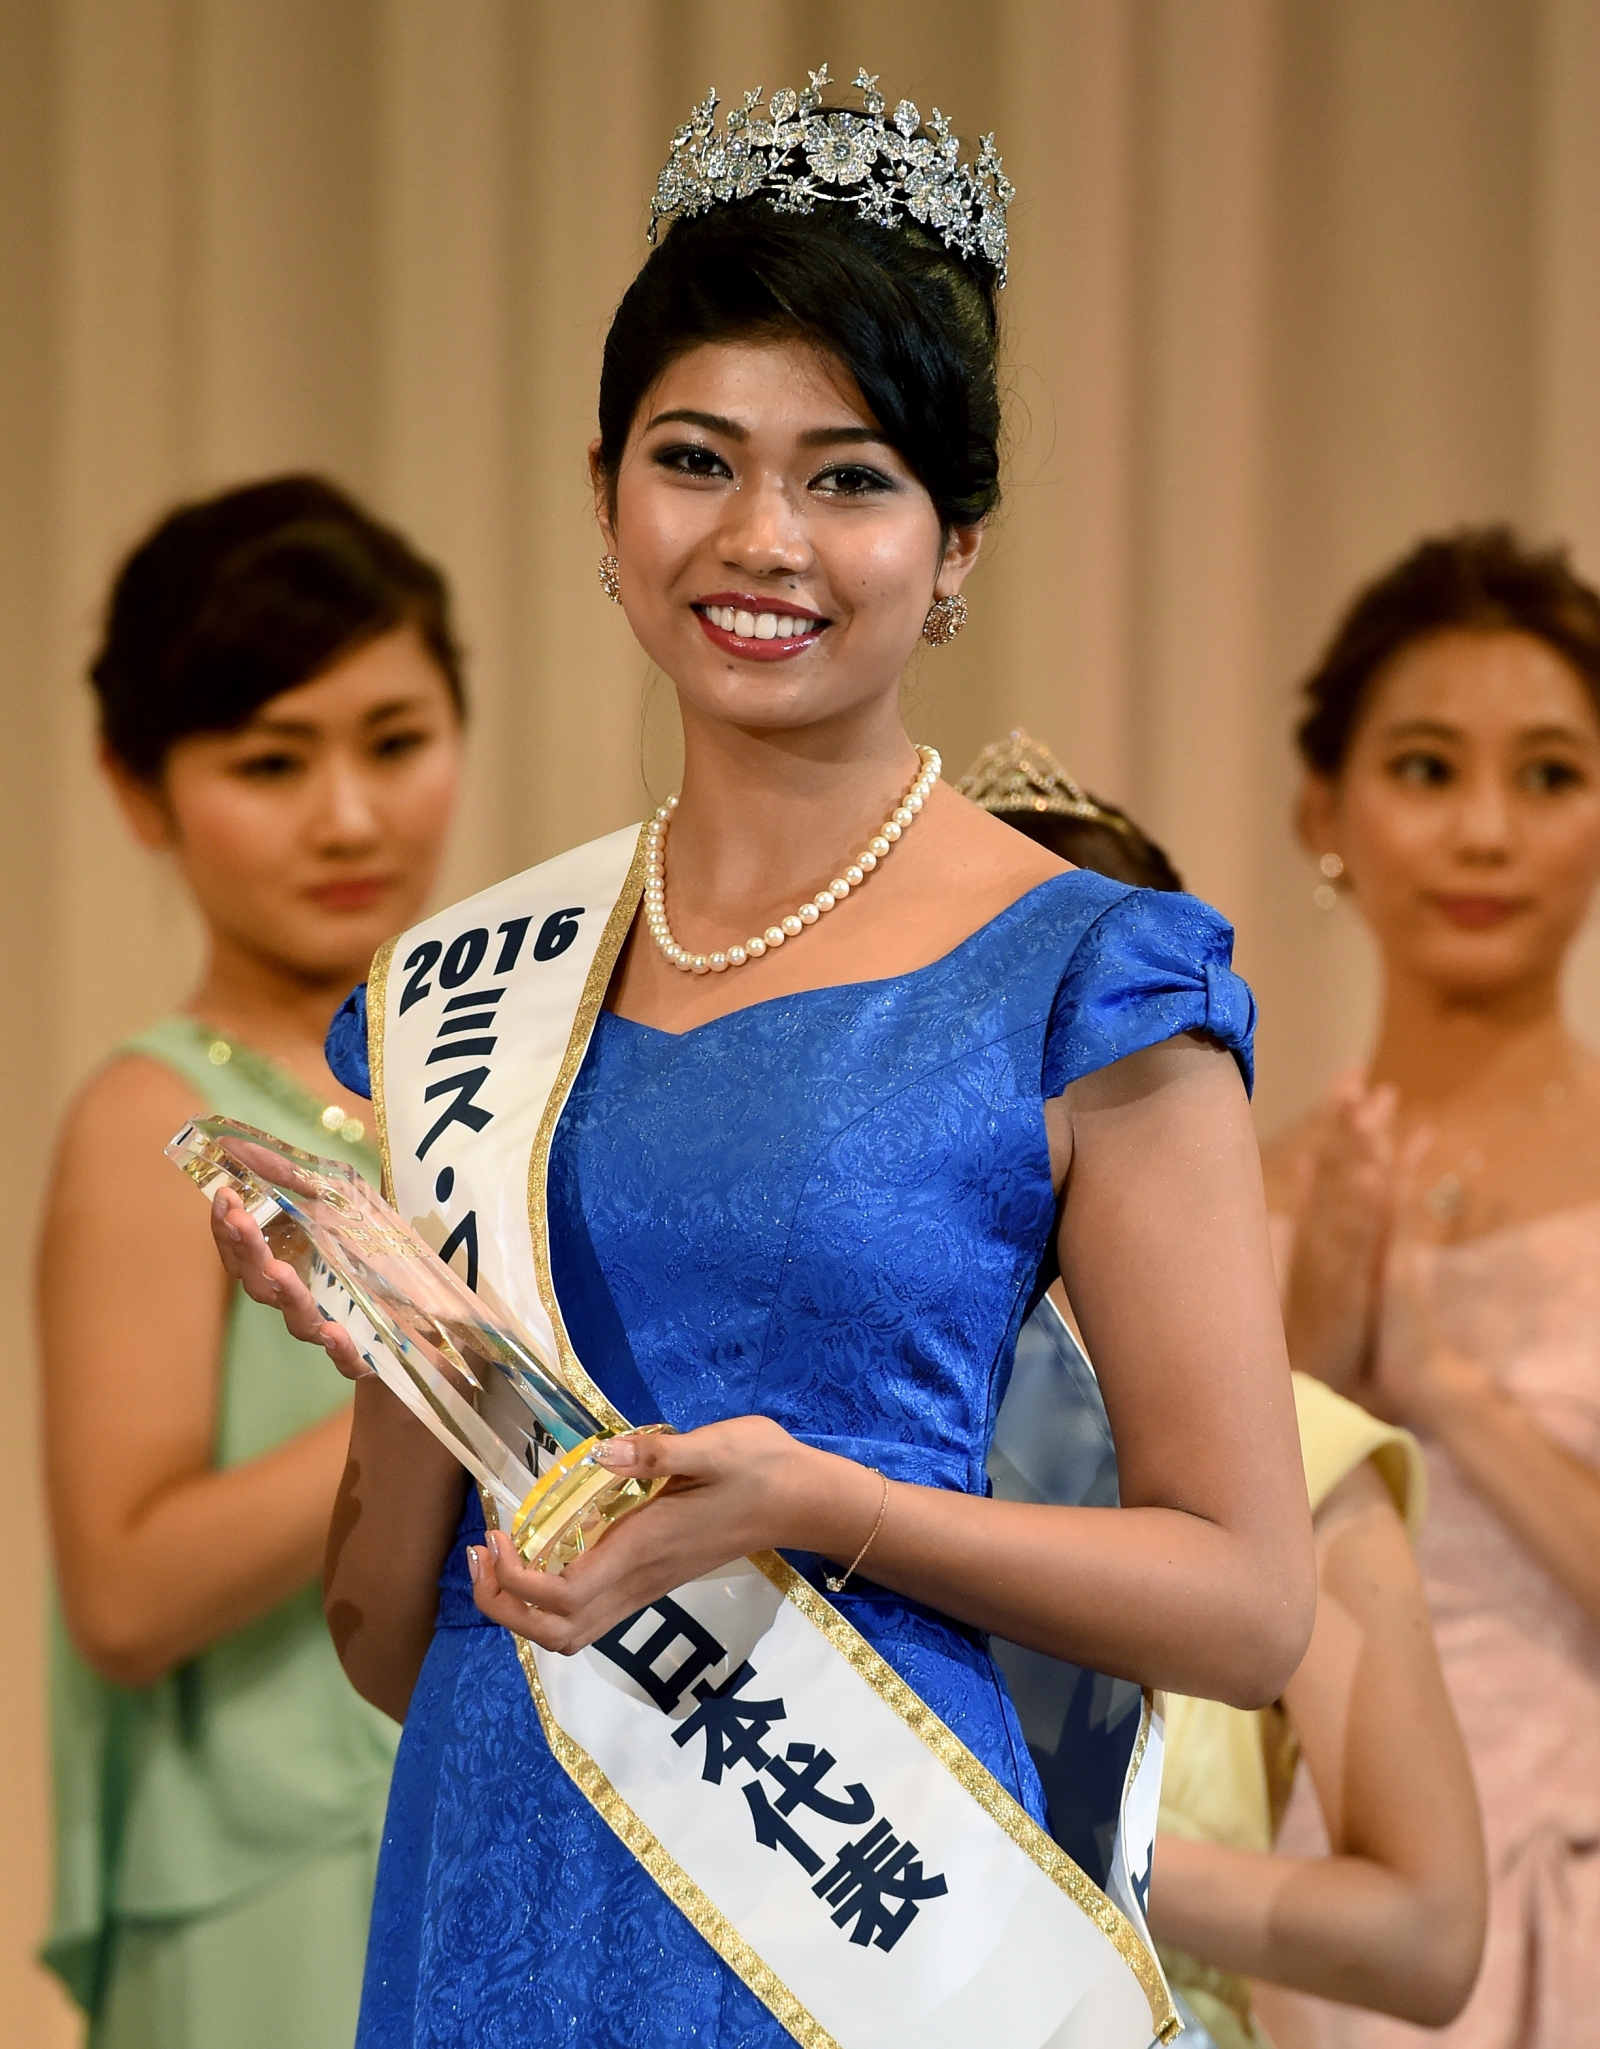 Indian-Japanese contestant Priyanka Yoshikawa crowned Miss Japan faces